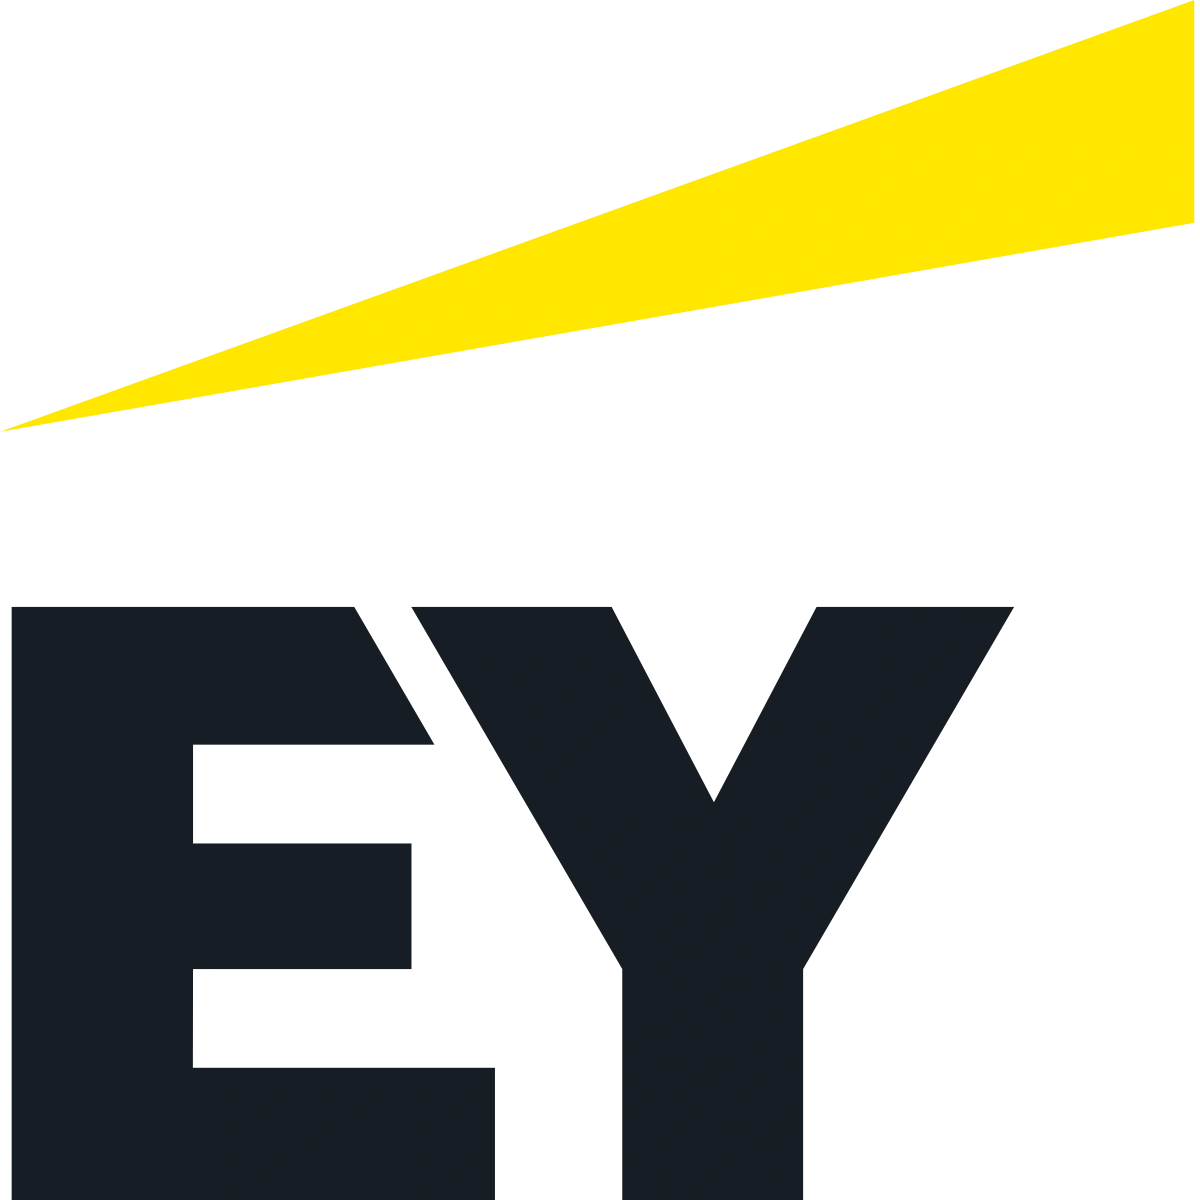 ey-logo